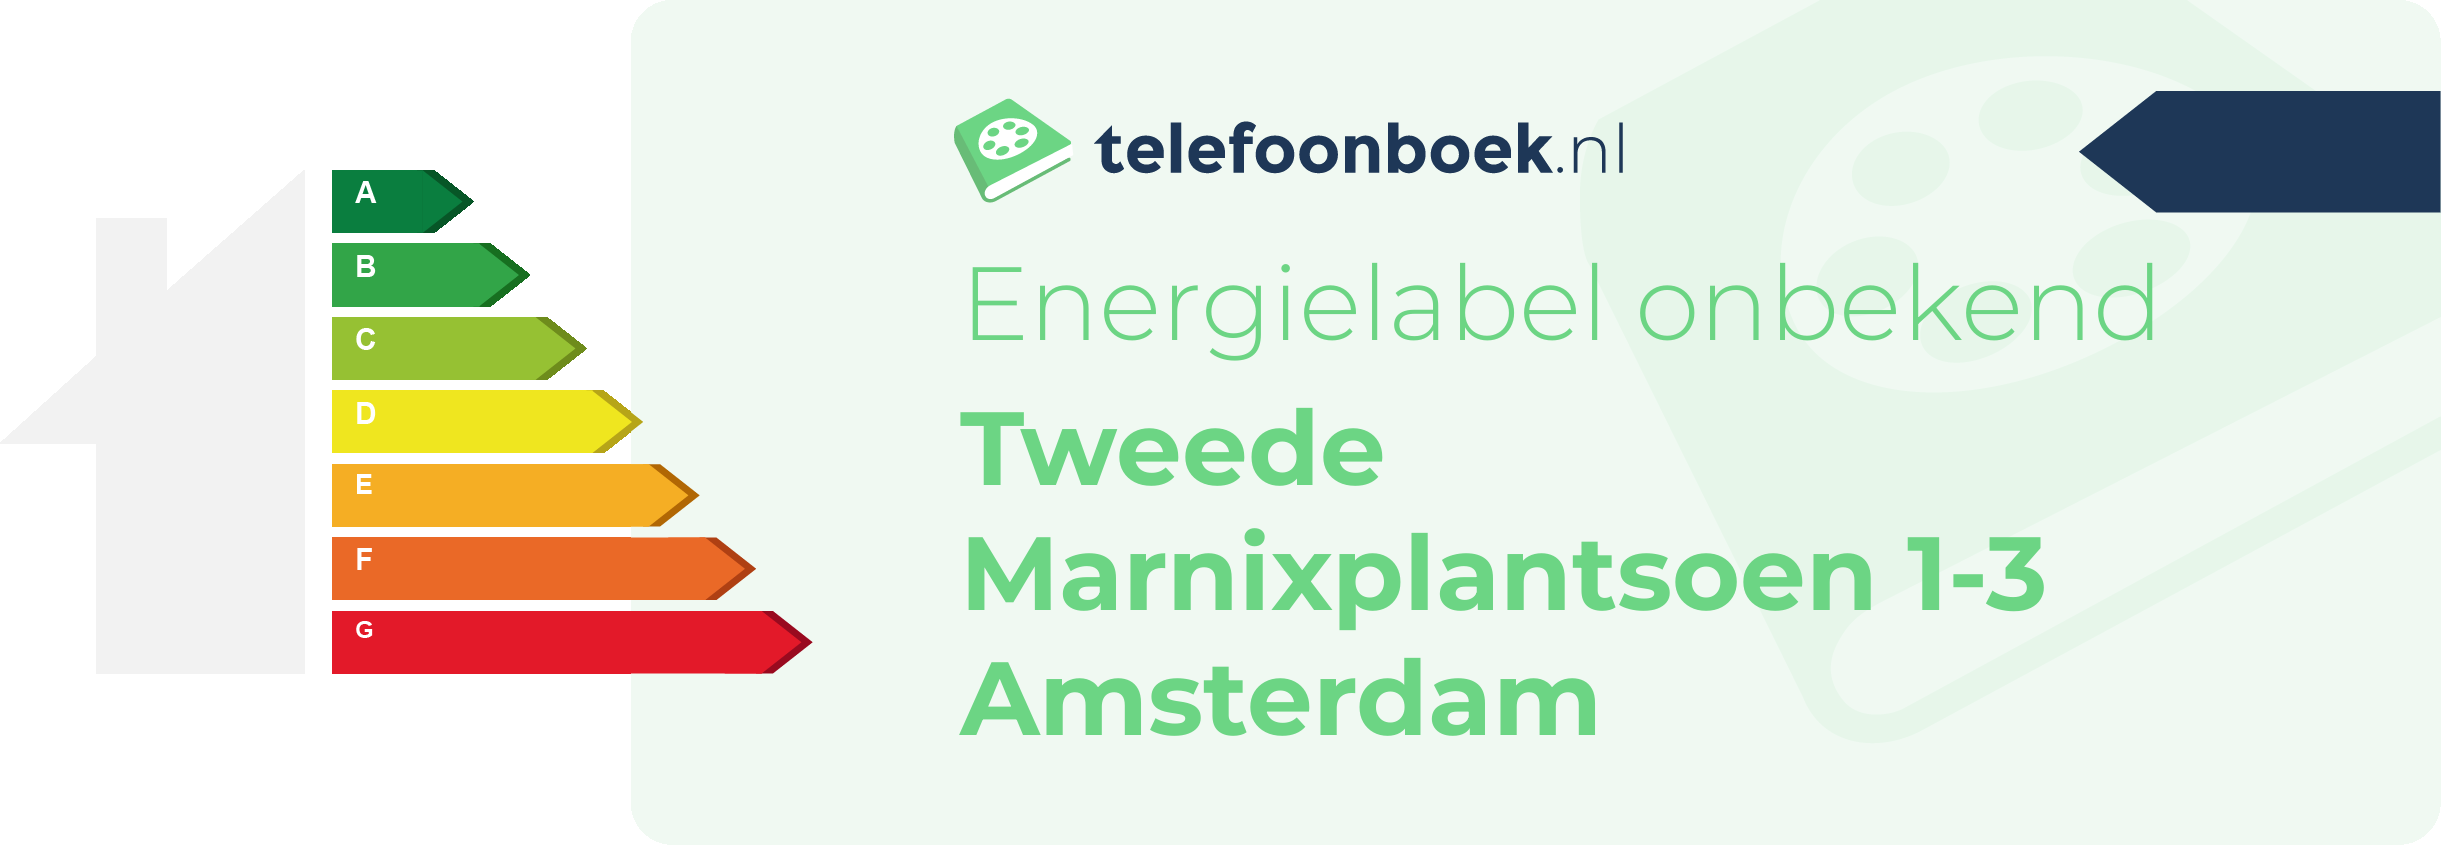 Energielabel Tweede Marnixplantsoen 1-3 Amsterdam